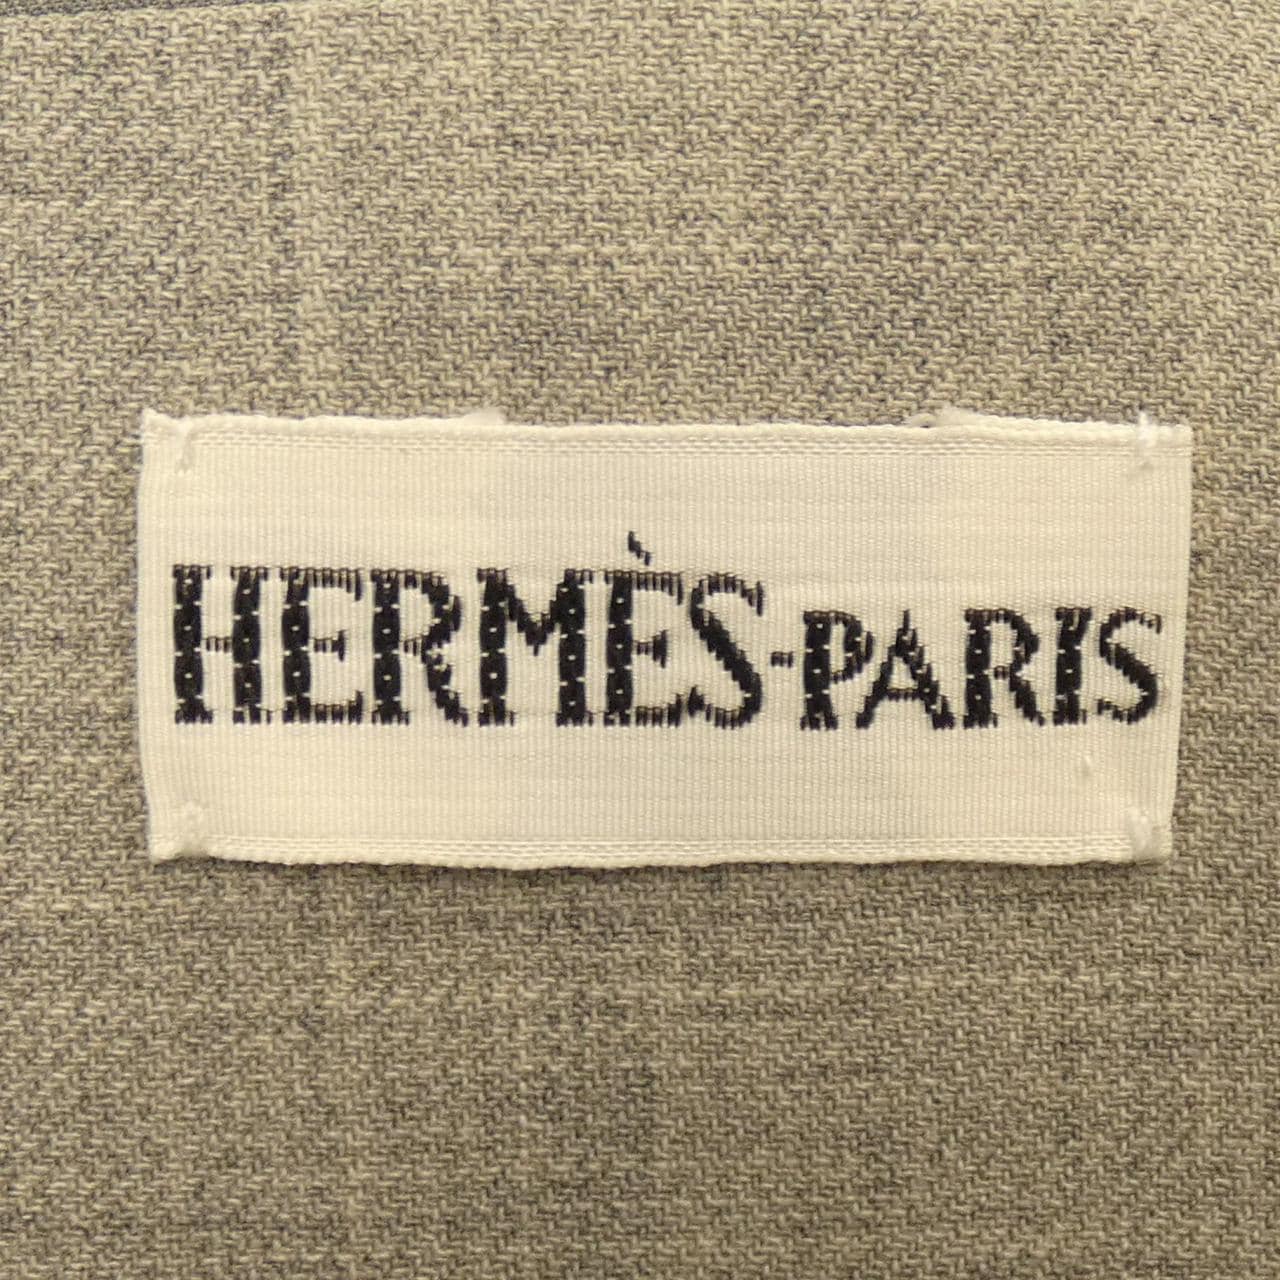 [vintage] HERMES coat